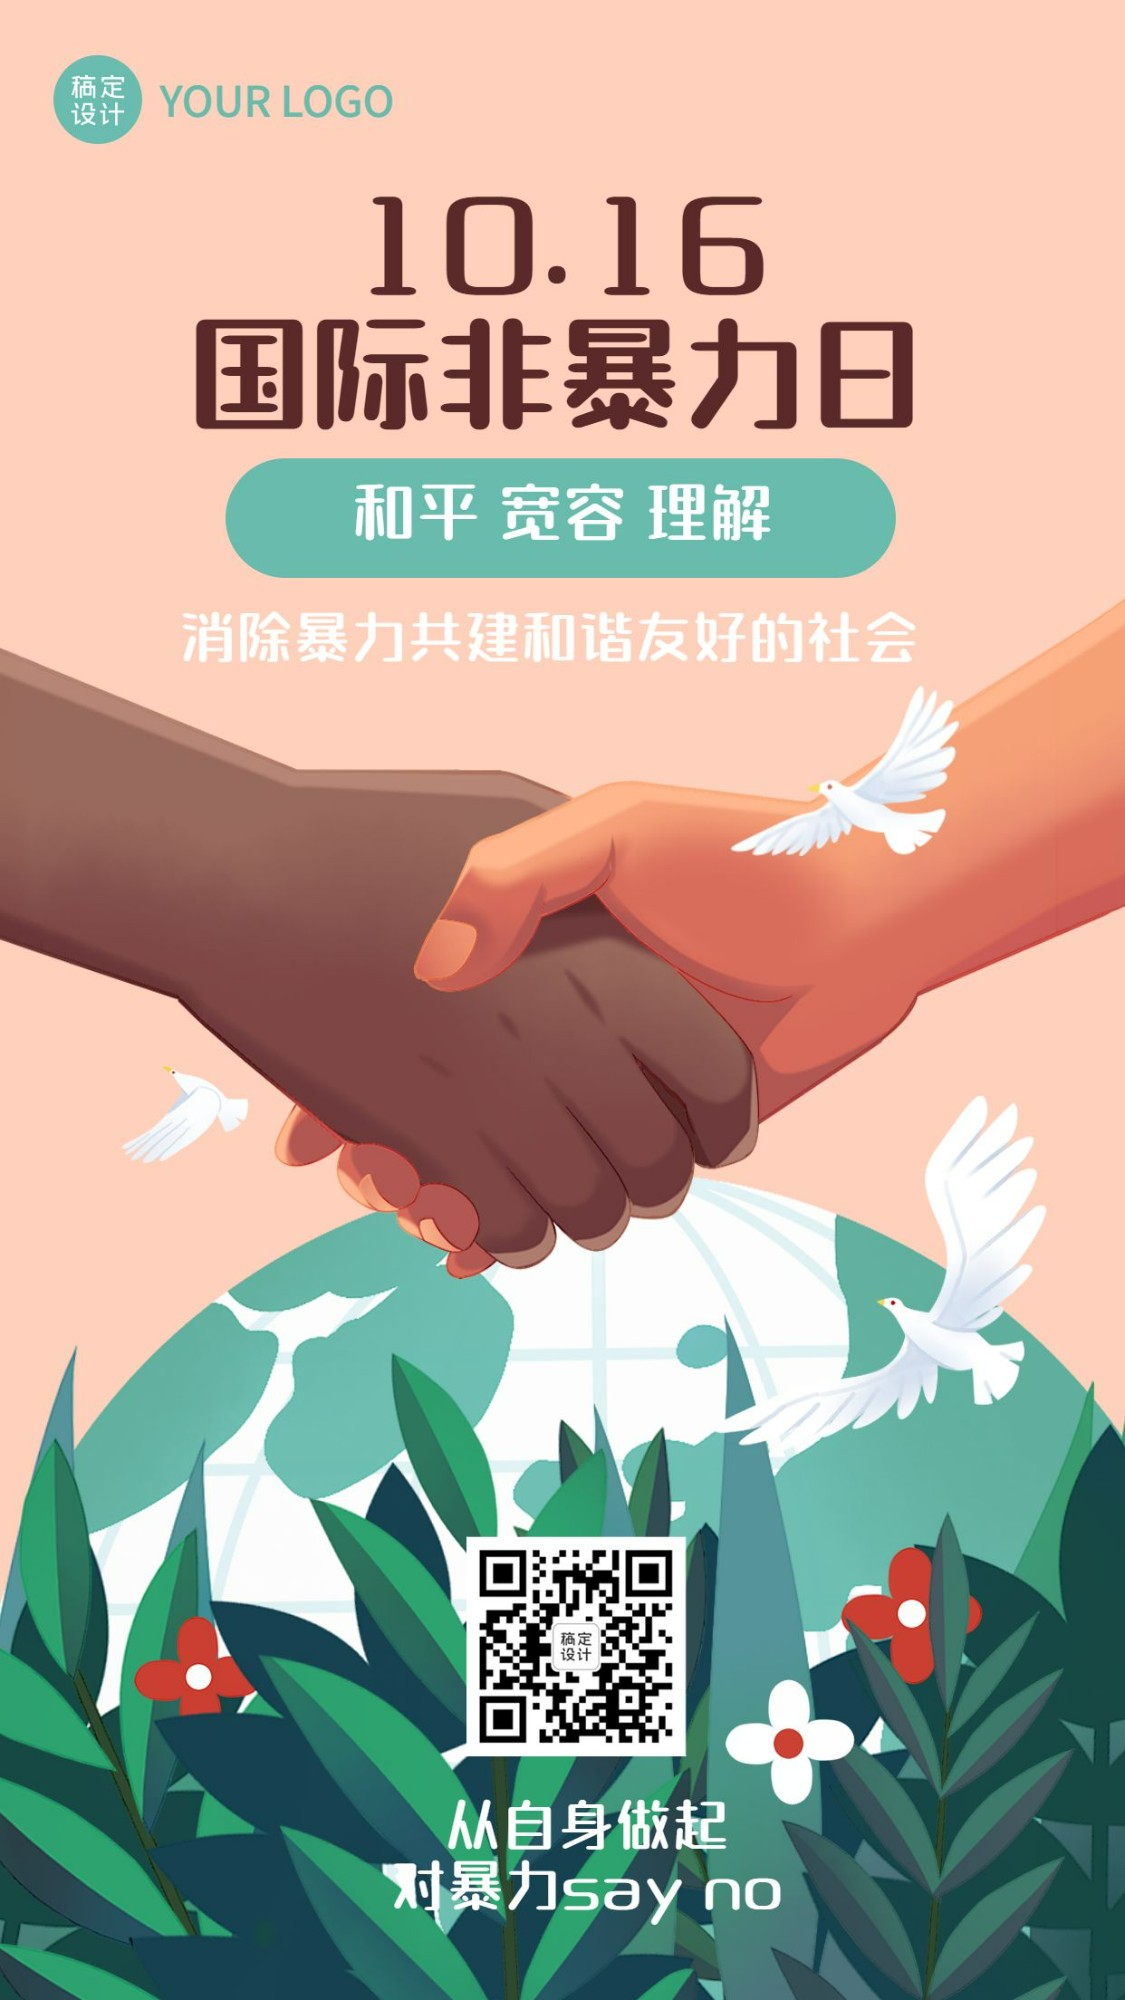 国际非暴力日/国际宽容日宣传手绘插画海报